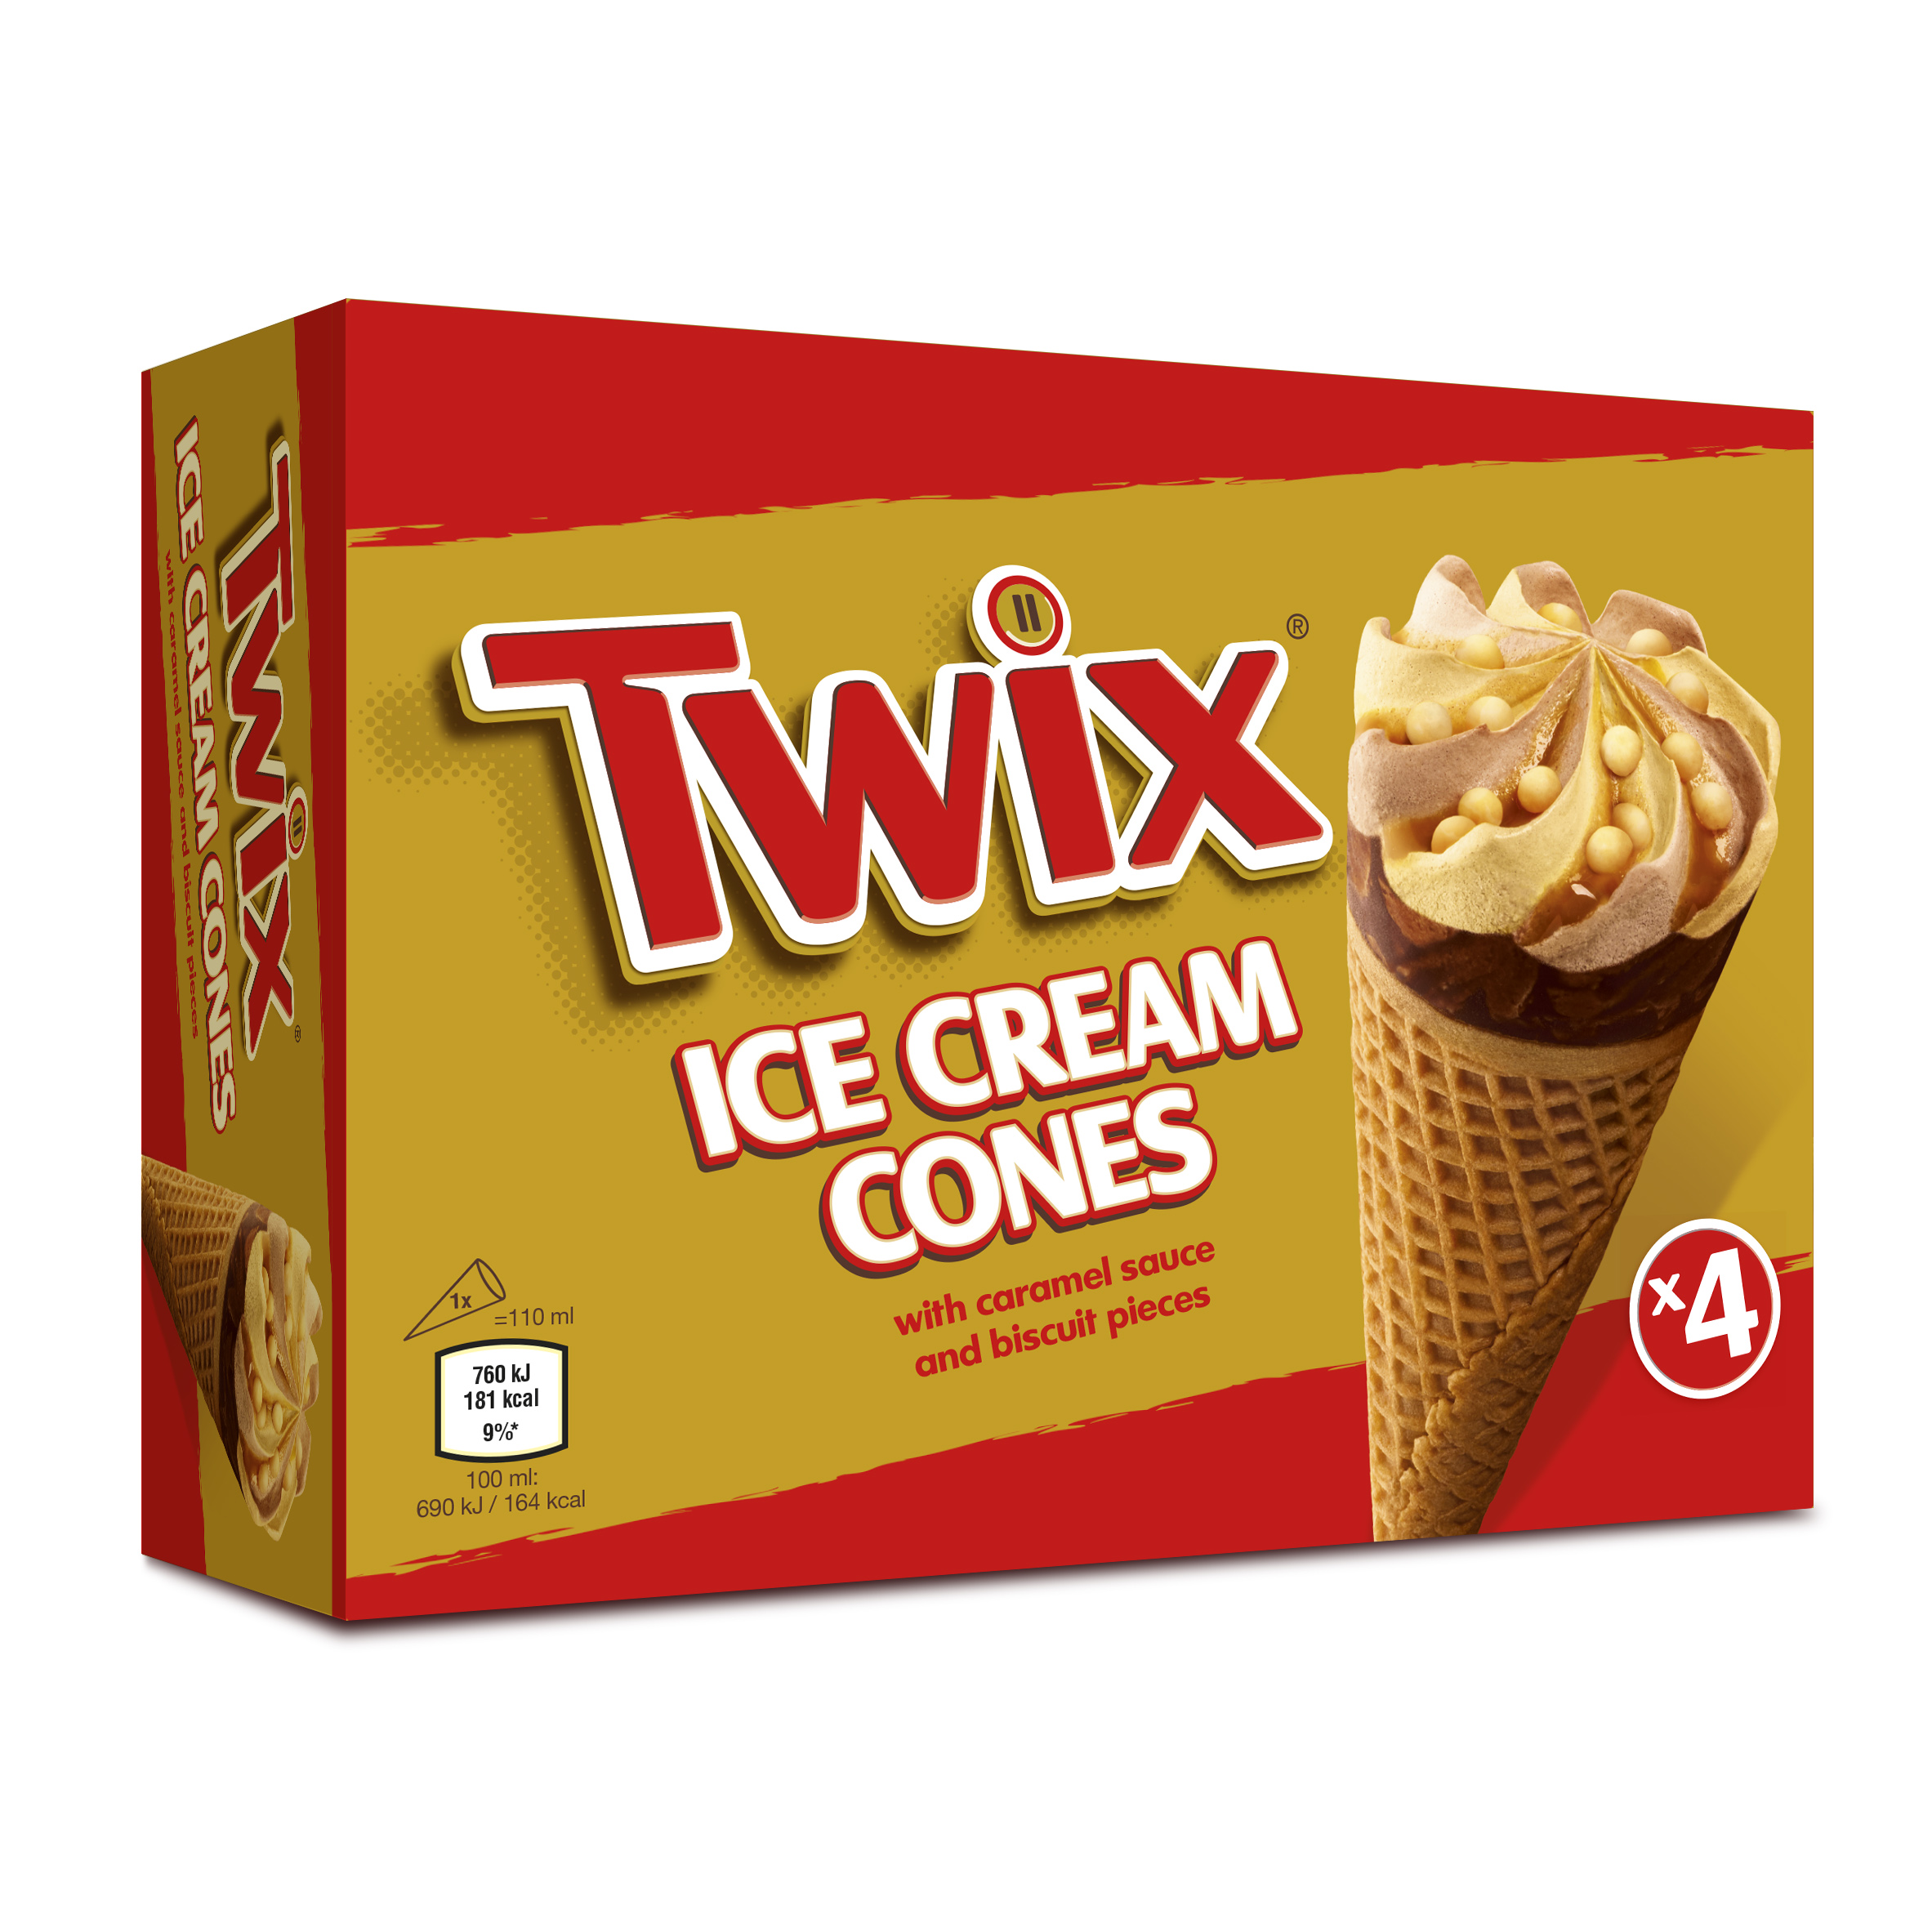 Introducing new Twix ice cream cones